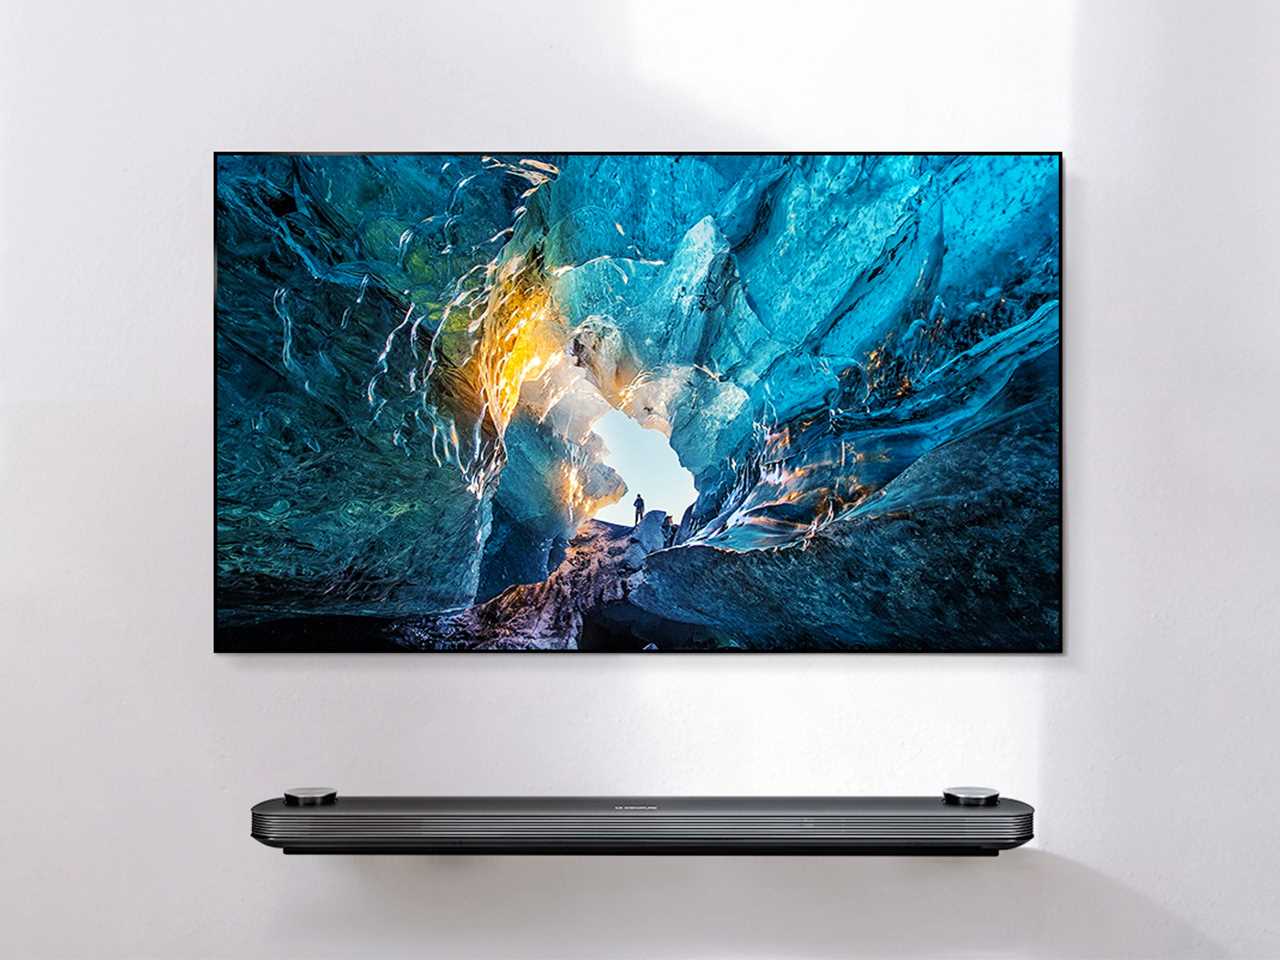 Ультратонкий телевизор LG SIGNATURE OLED W7 с OLED Hub